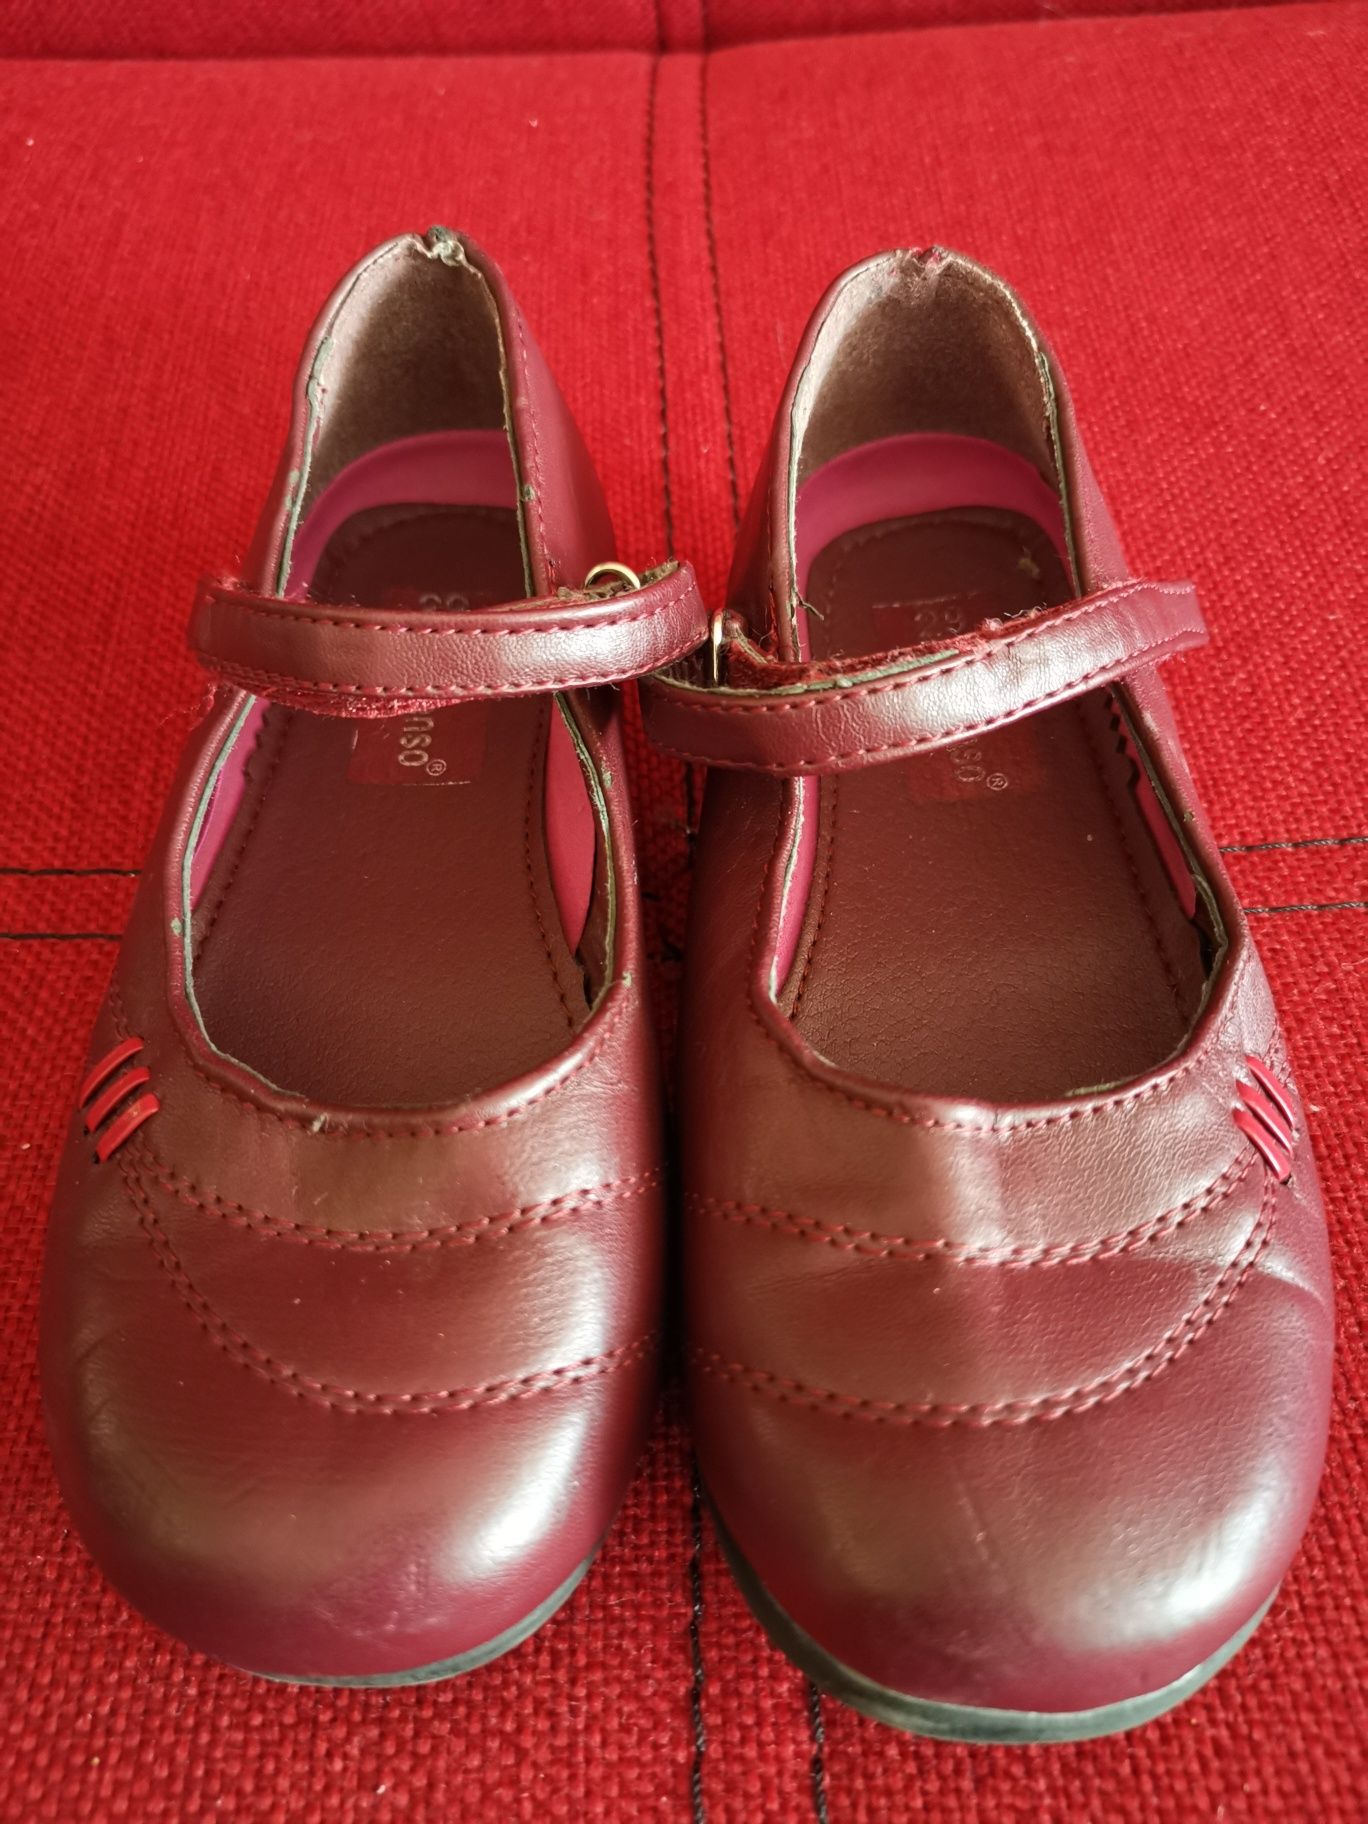 Sandale/pantofi/balerini fetite din piele veritabila cu scai-mar.29